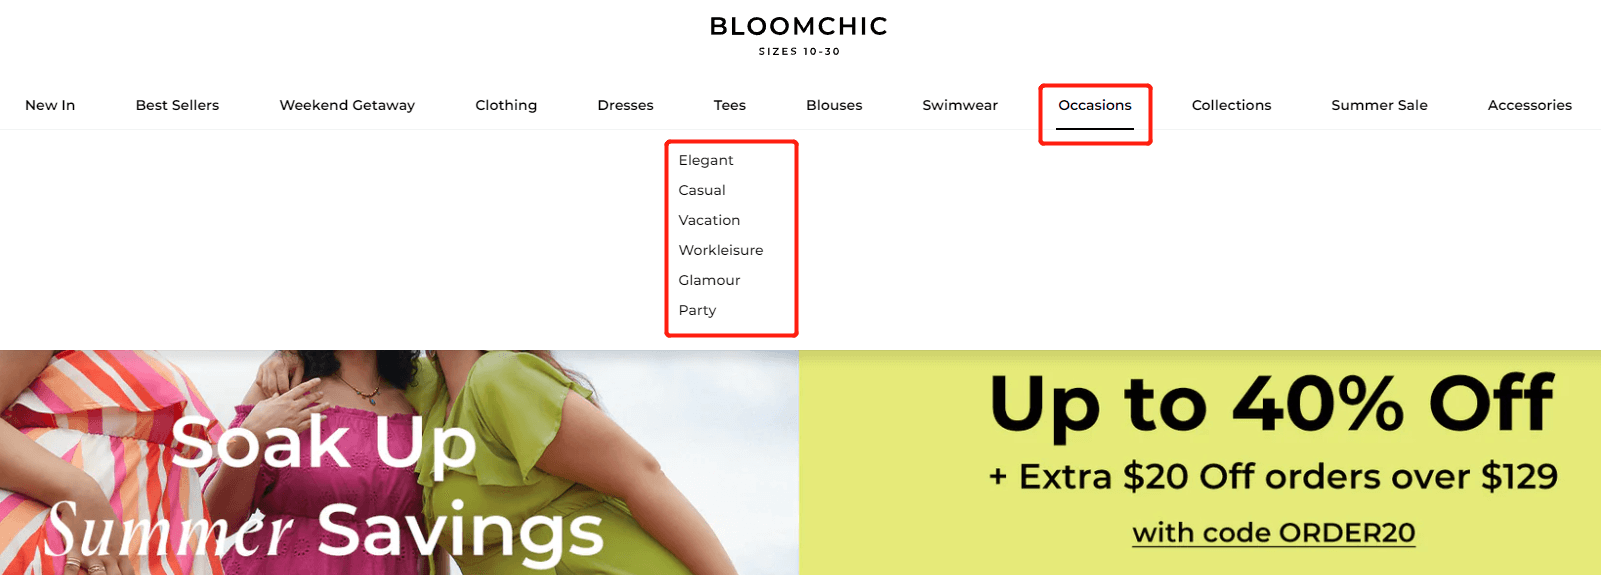 2023 中国全球化品牌「成长明星大起底」之 Bloomchic